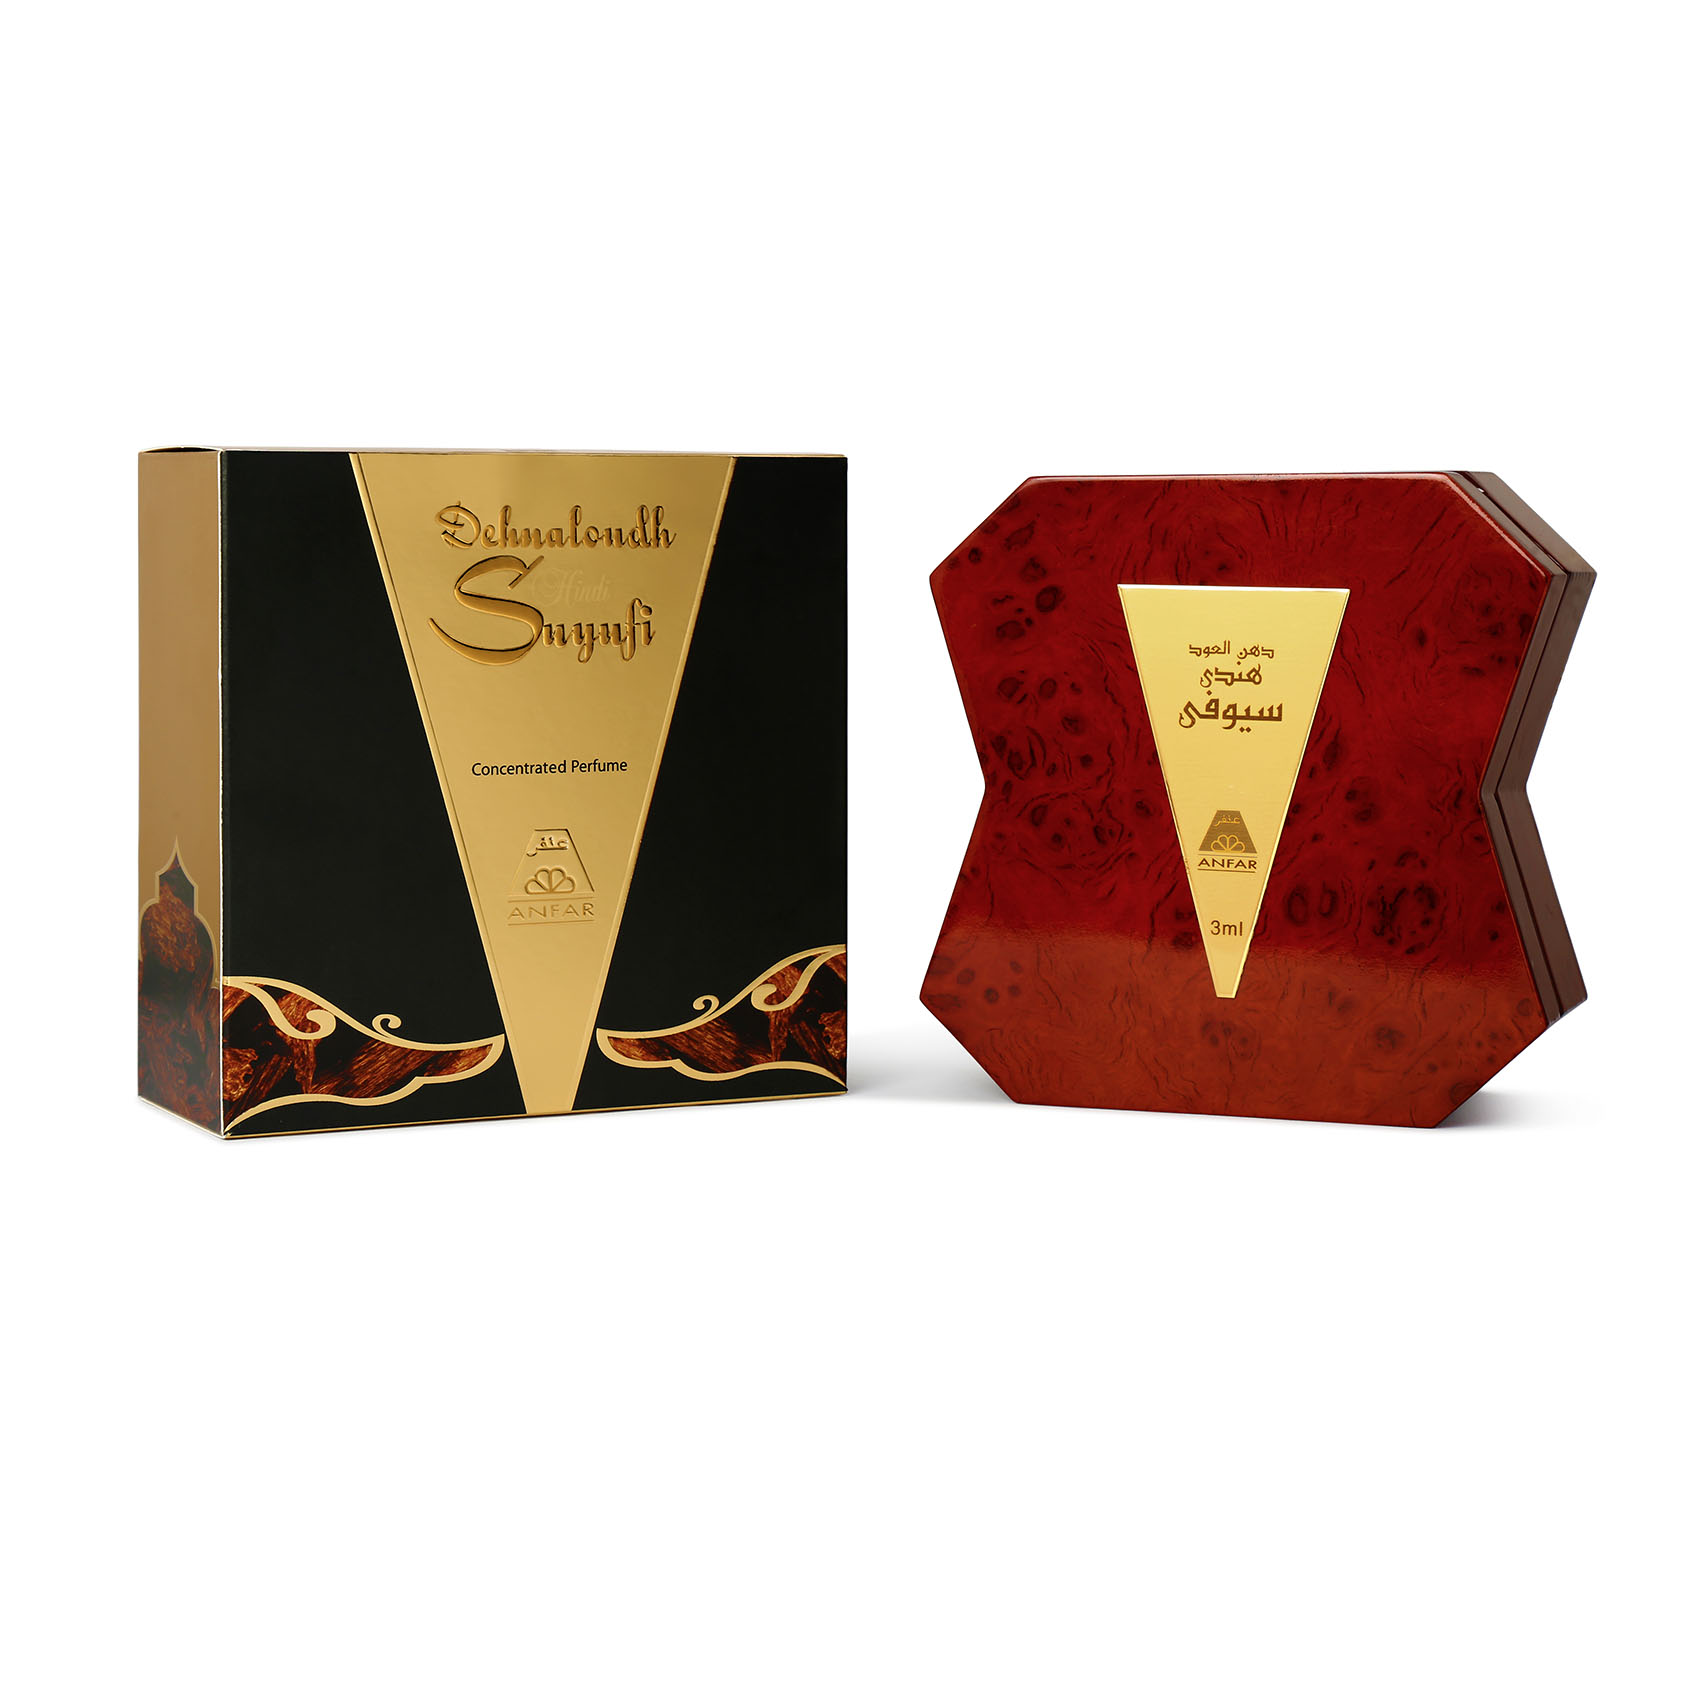 Dehnaloudh Suyufi Cp 3 ml Perfume For Men & Women By Anfar